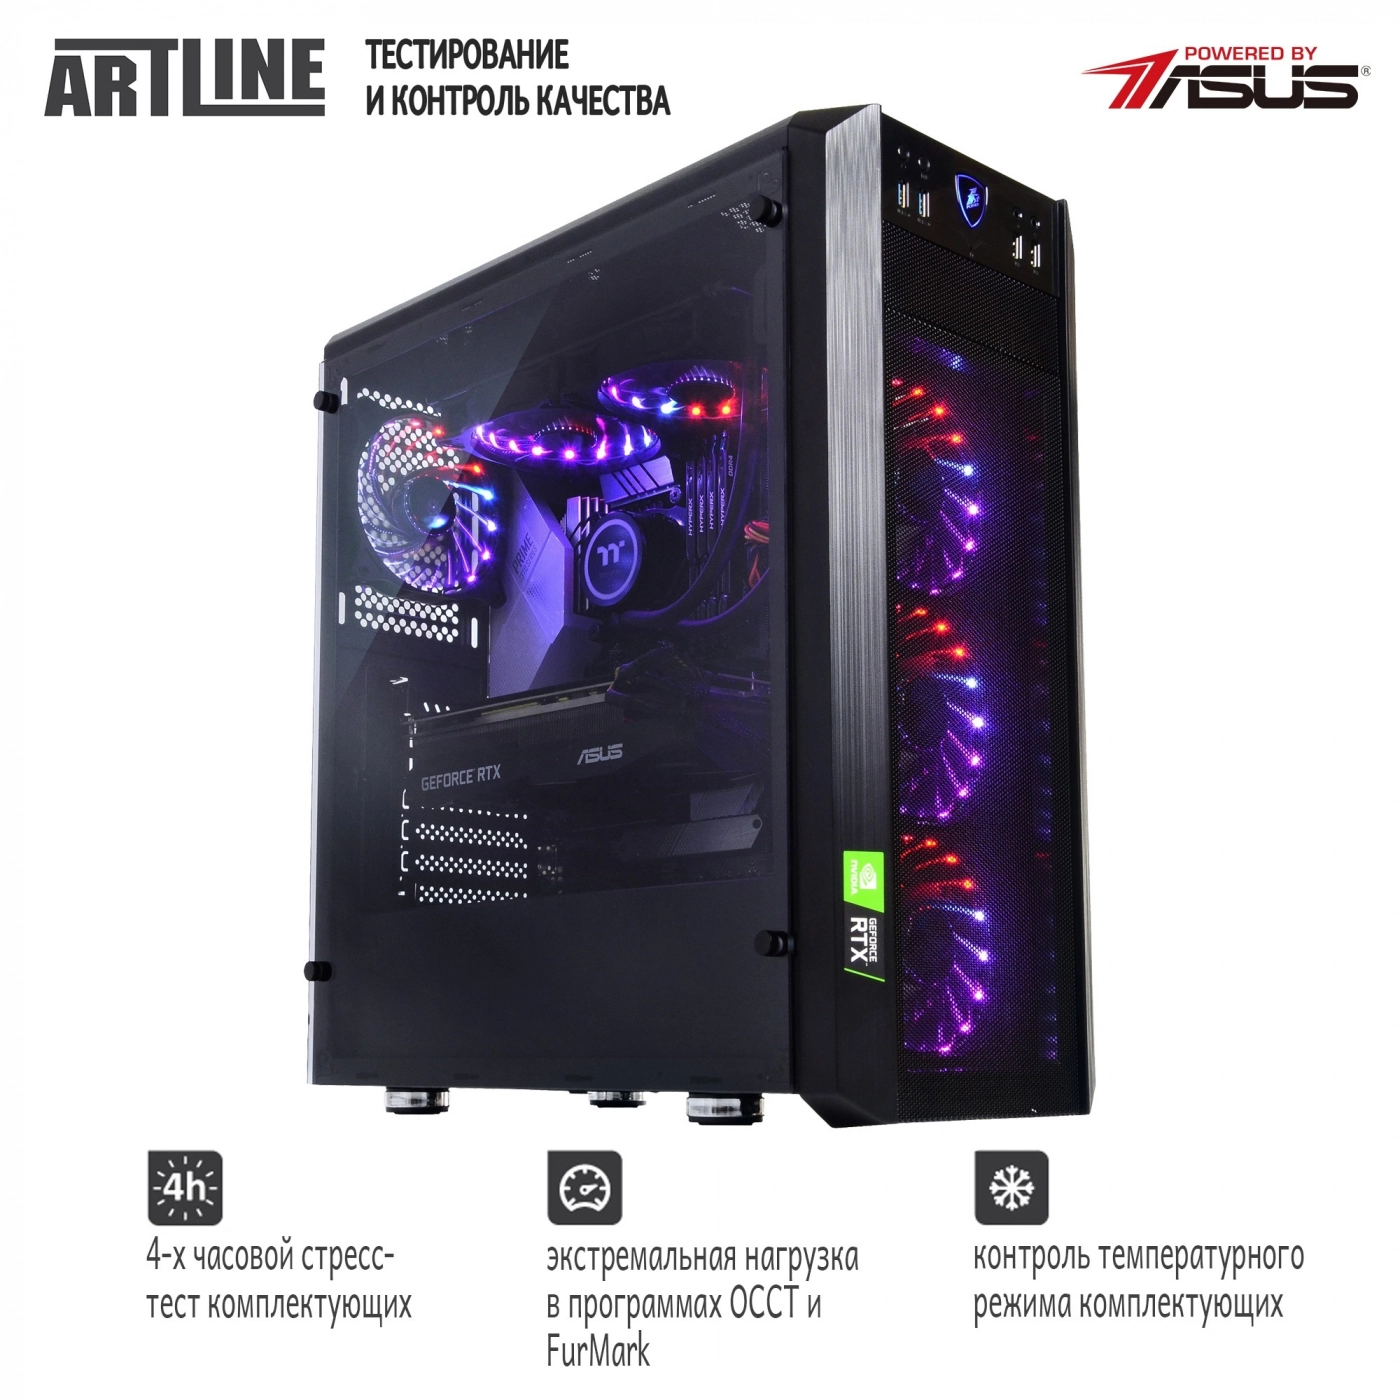 Купить Компьютер ARTLINE Gaming X94v09 - фото 9